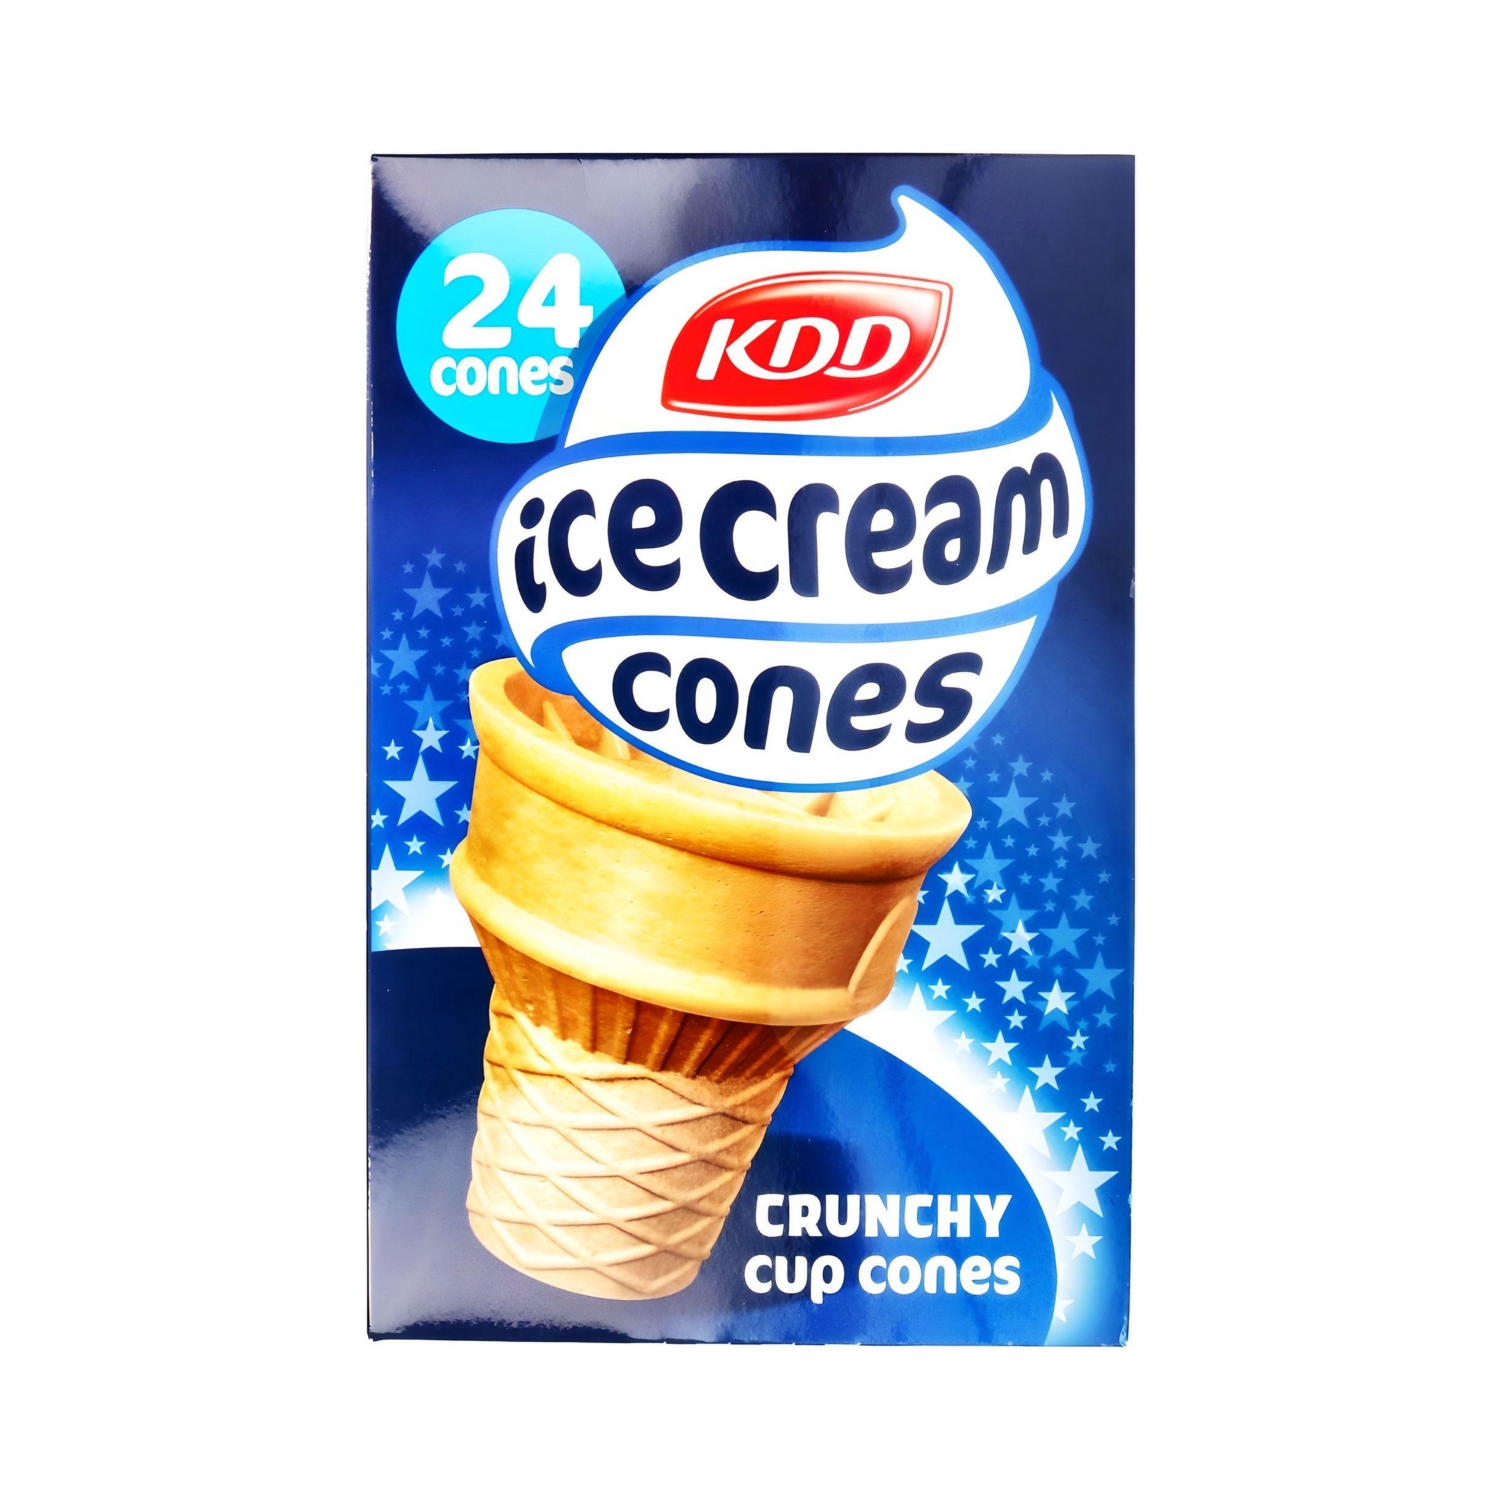 Kdd Ice Cream Crunchy Cup Cones